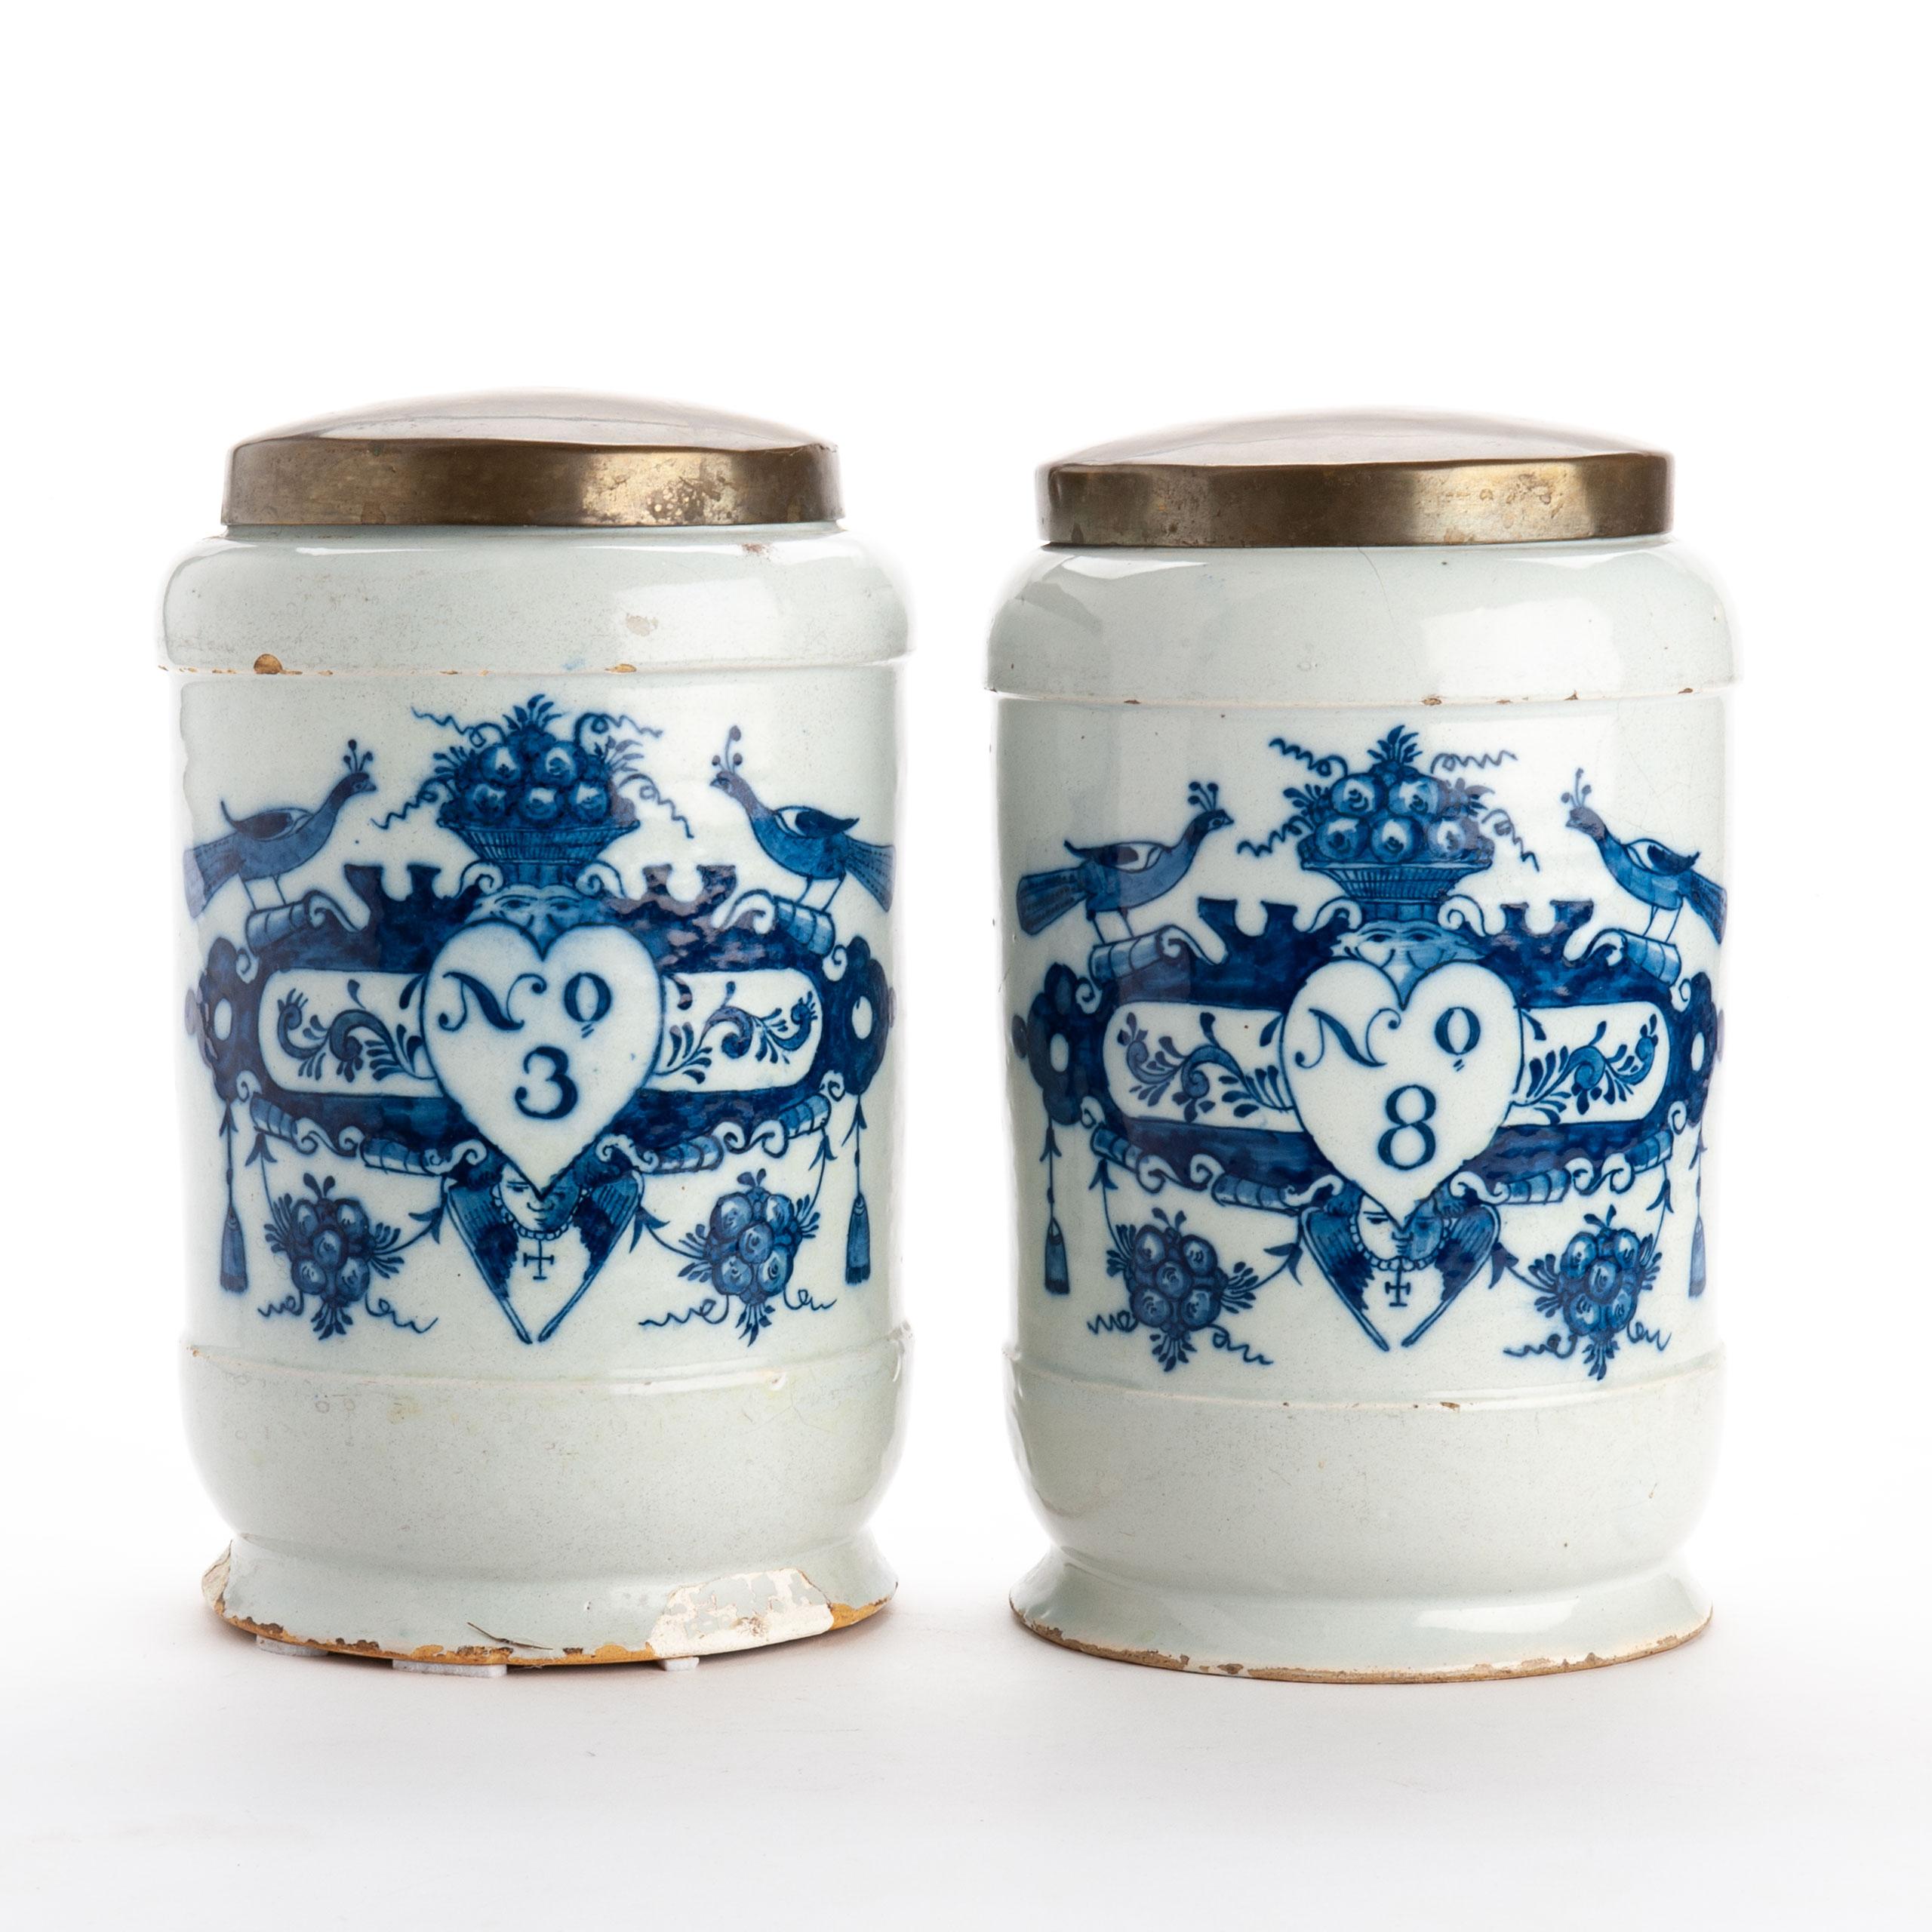 19th Century Delft Ceramic Drug Jar, circa 1800